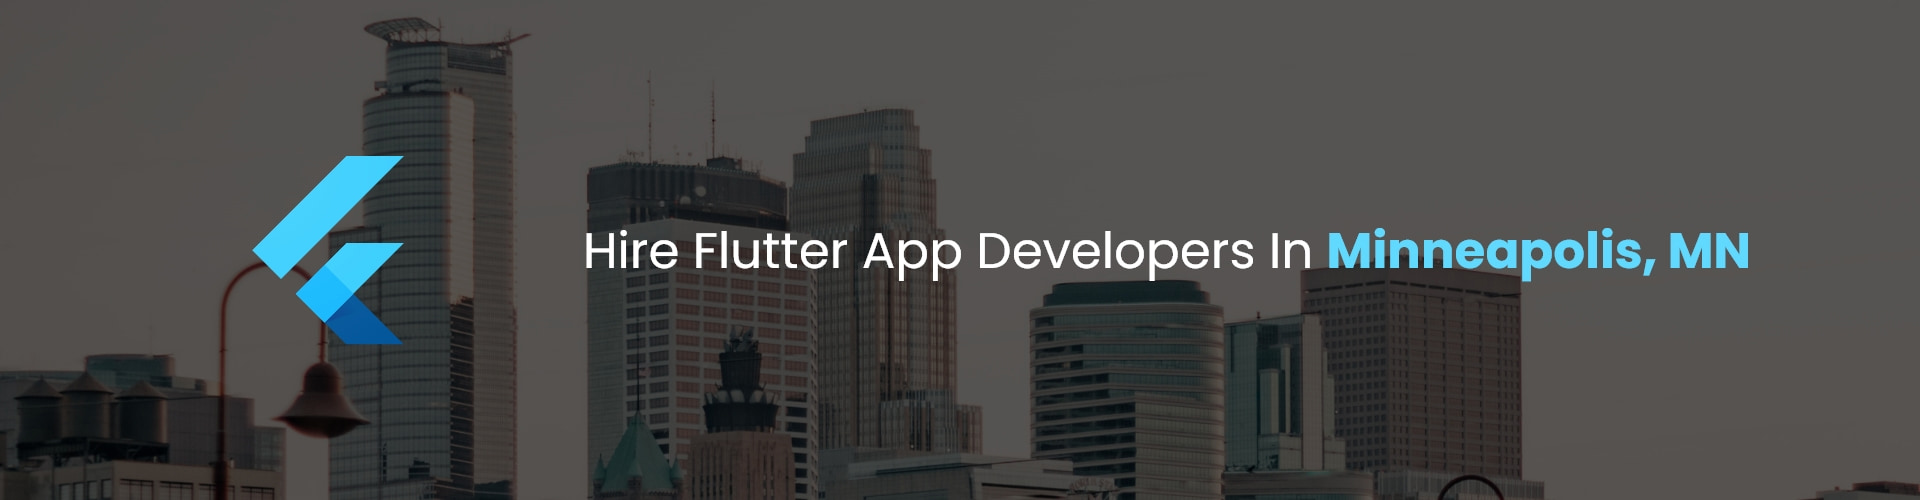 fire flutter app developers in minneapolis